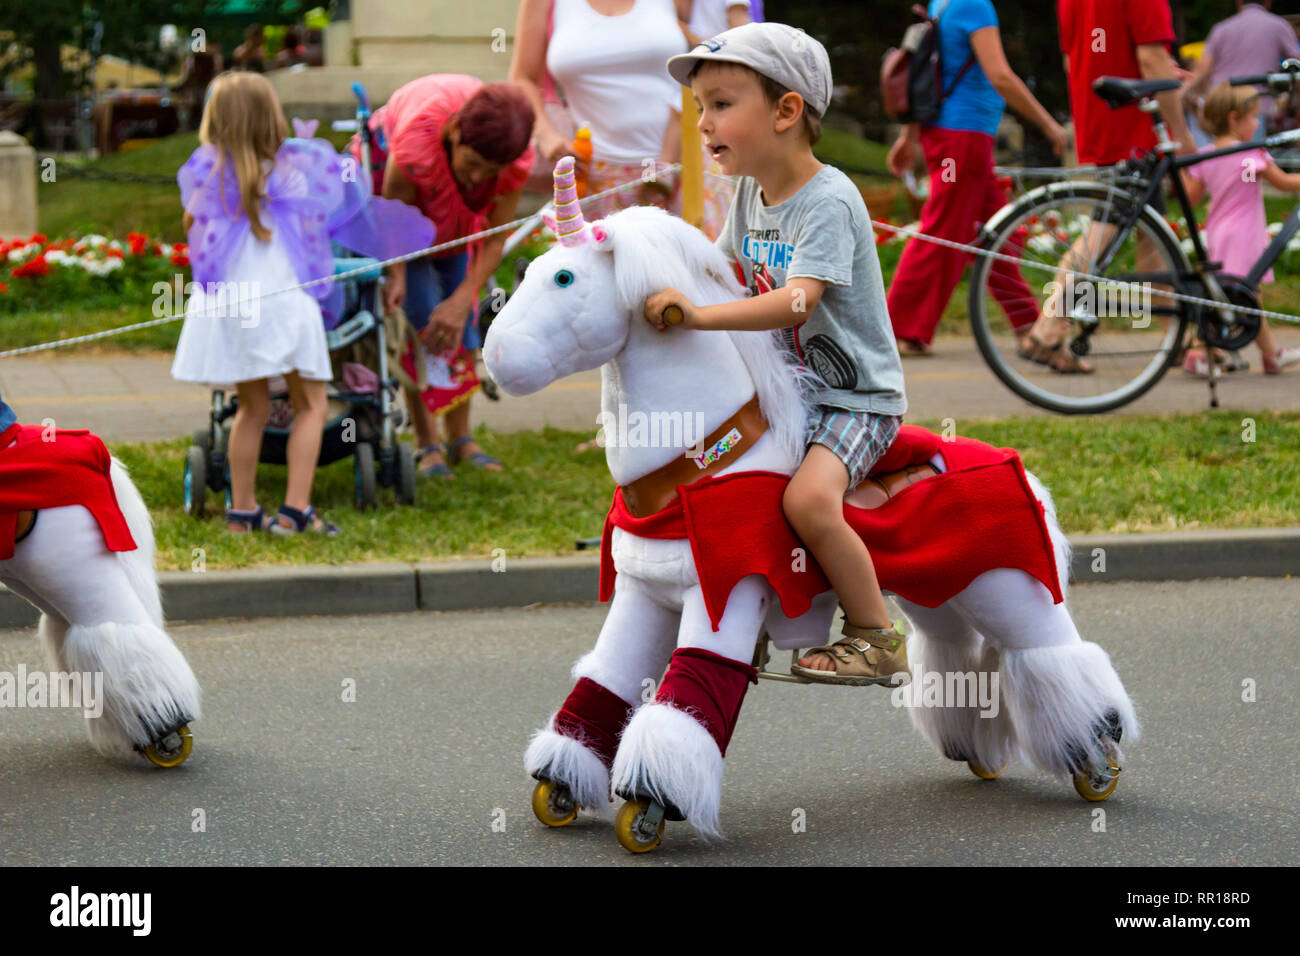 Tunder Fesztival (Feen' Festival) in Sopron, Ungarn am 24. Juni 2017 - Junge Kind sitzen auf Fahrt auf wenige Spielzeug Pferd Stockfoto